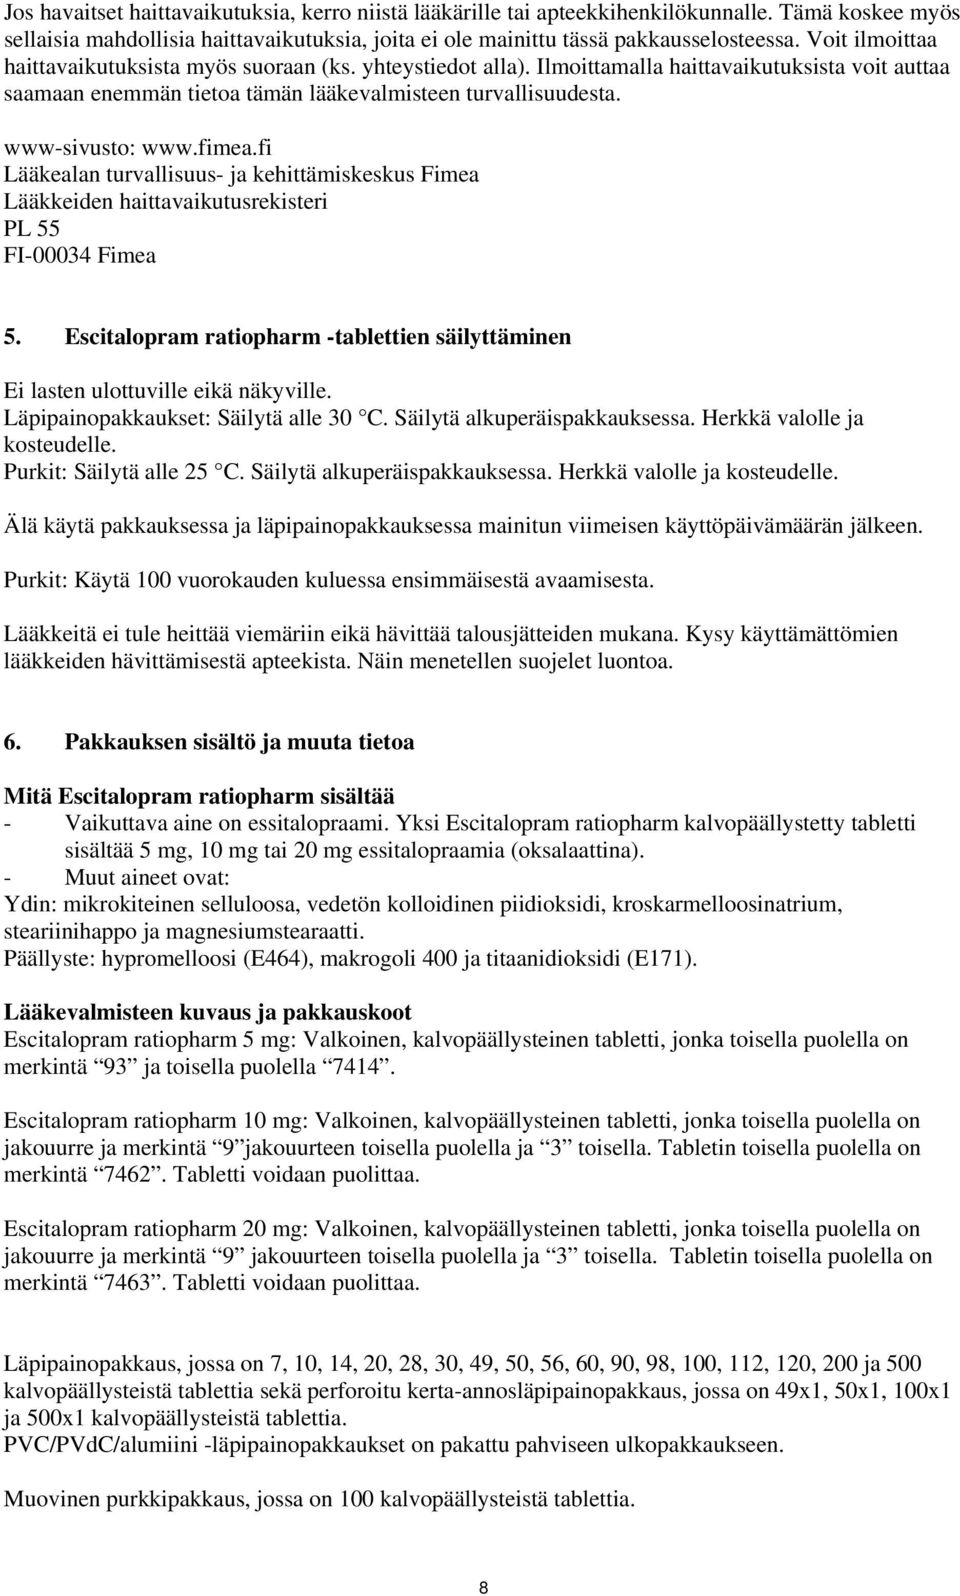 fimea.fi Lääkealan turvallisuus- ja kehittämiskeskus Fimea Lääkkeiden haittavaikutusrekisteri PL 55 FI-00034 Fimea 5.